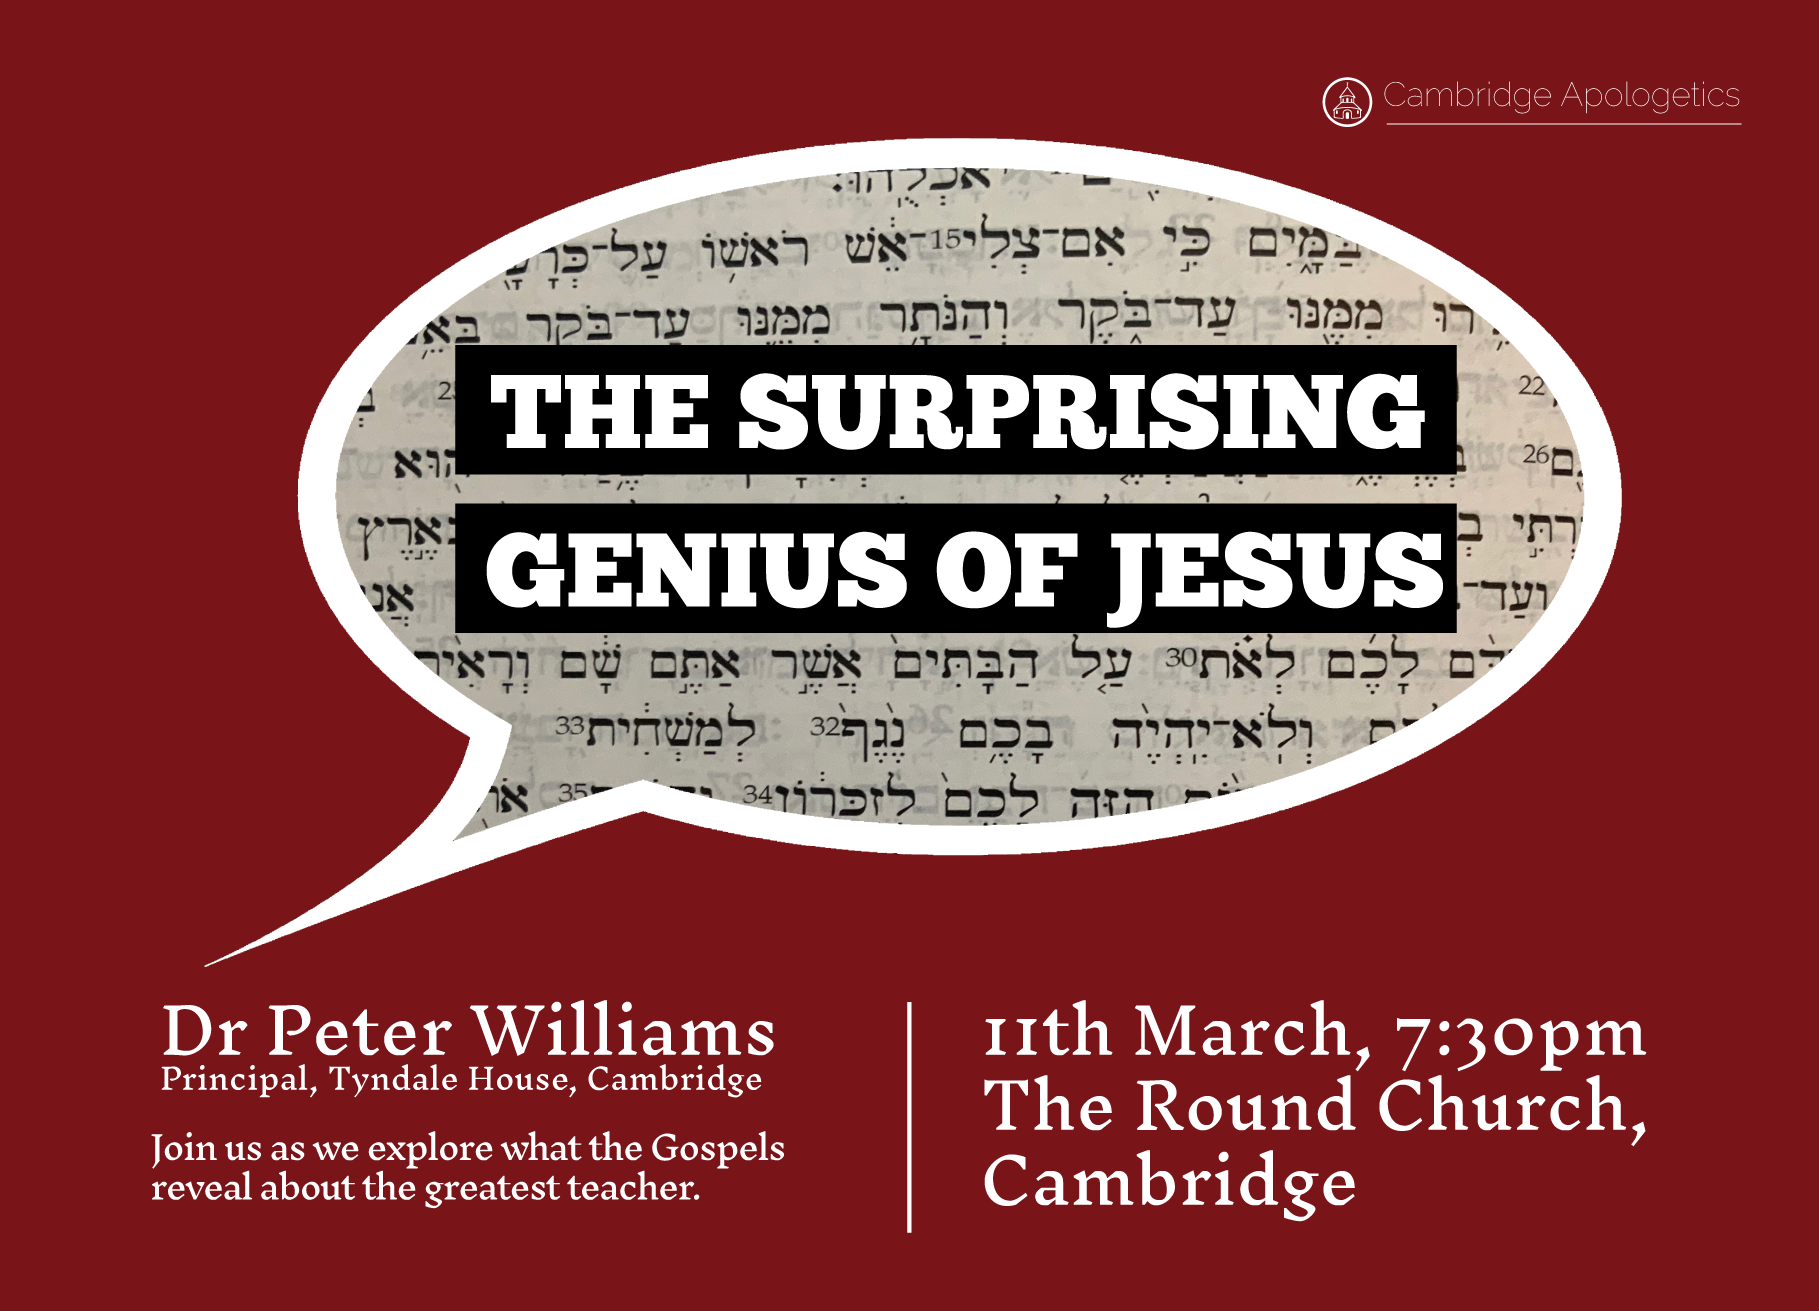 11 March; venue: The Round Church, Cambridge